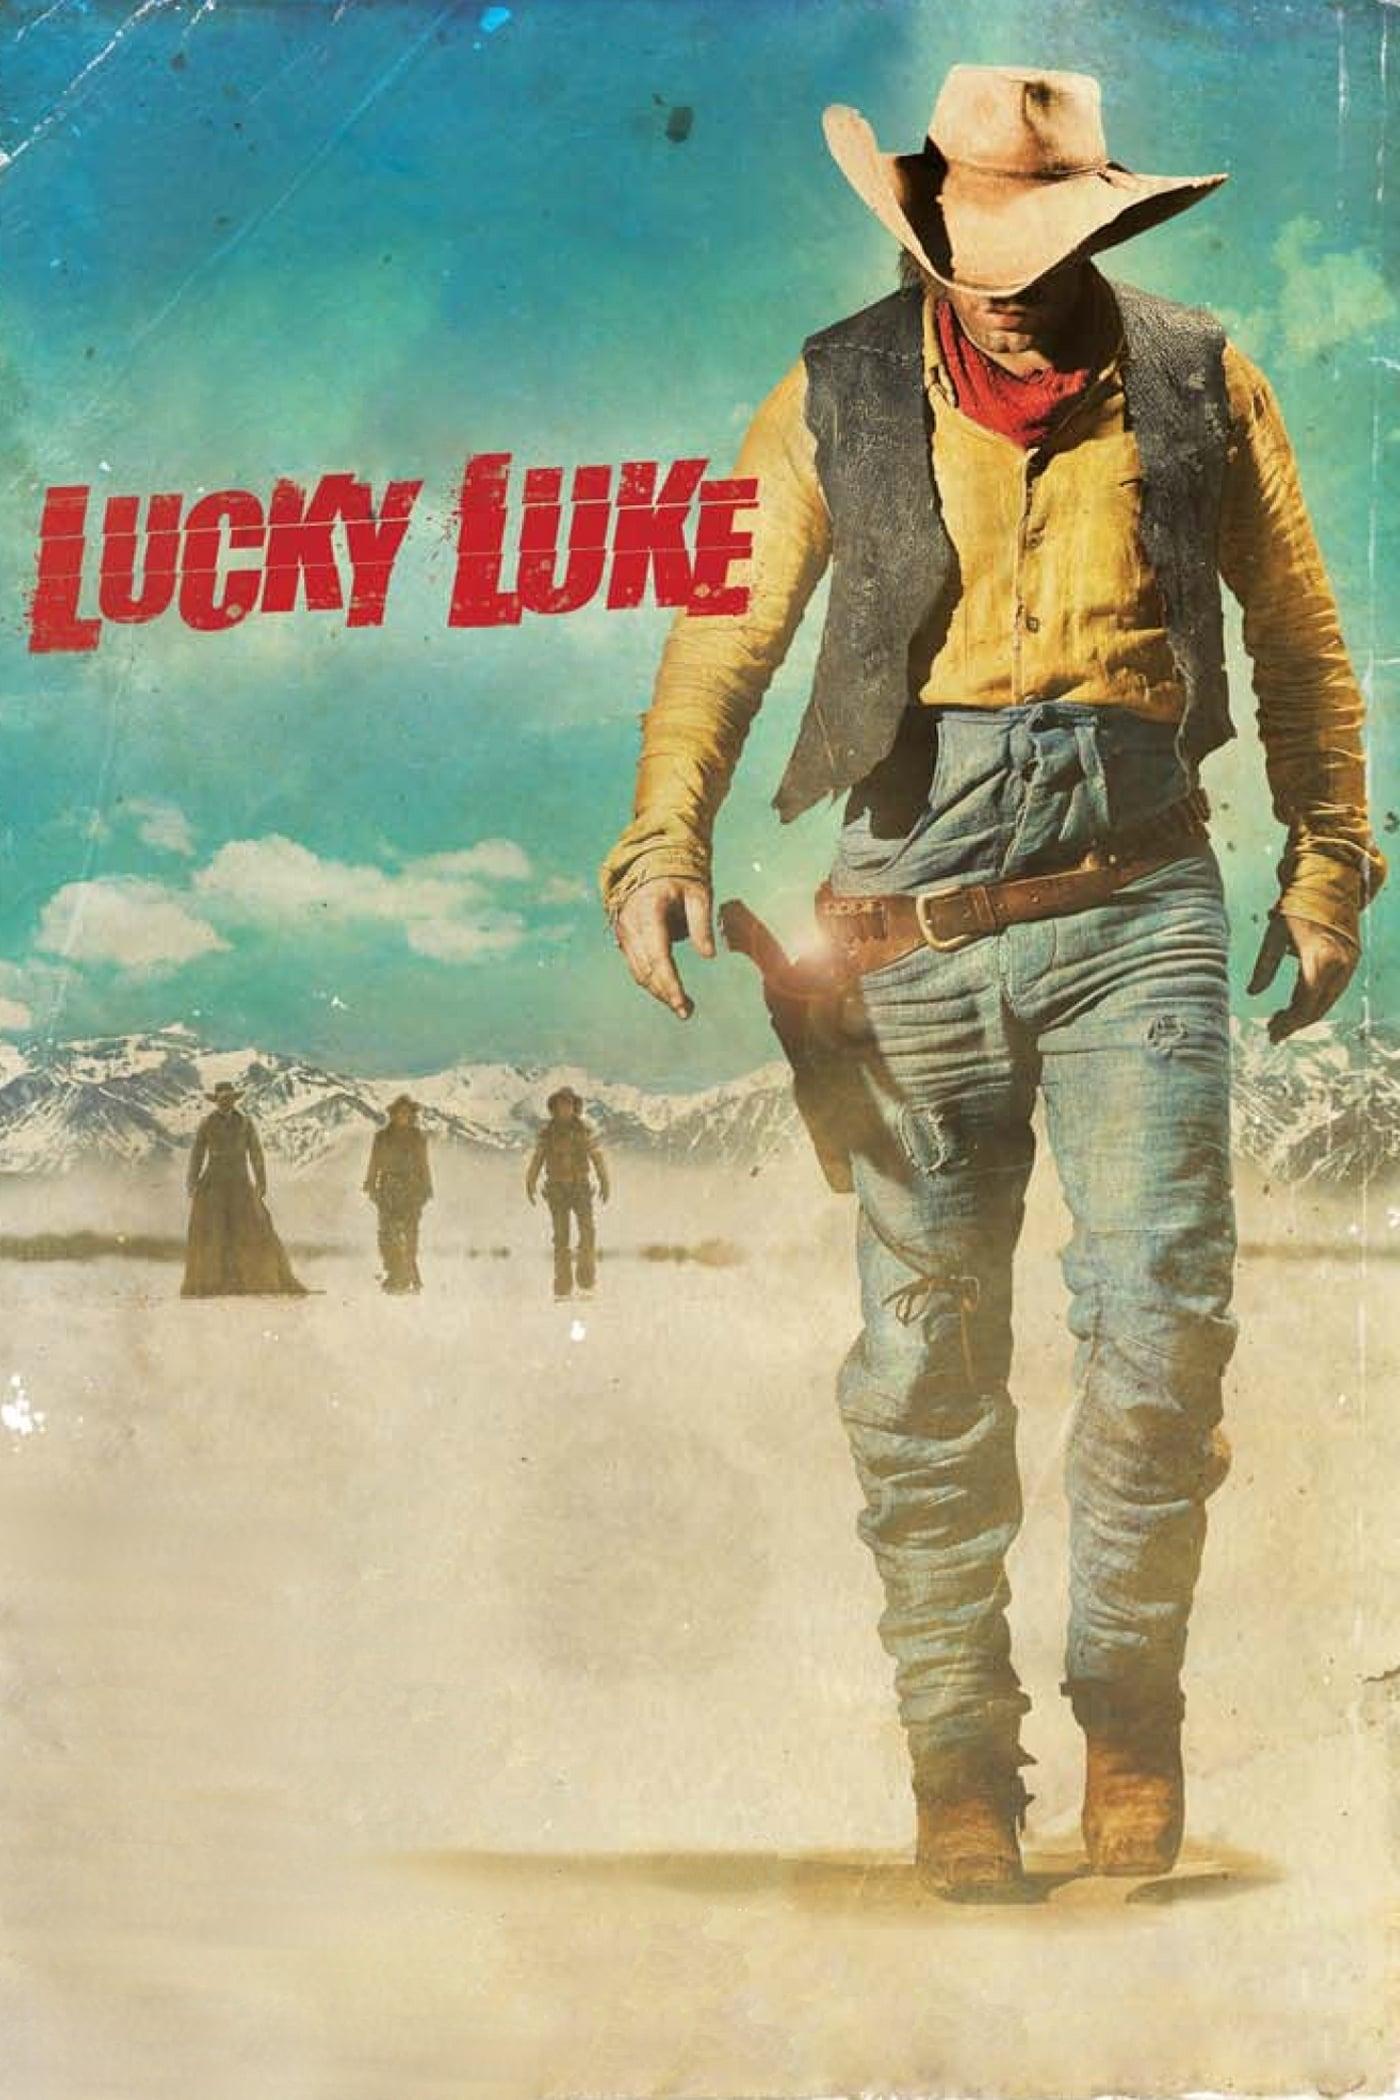 Lucky Luke poster